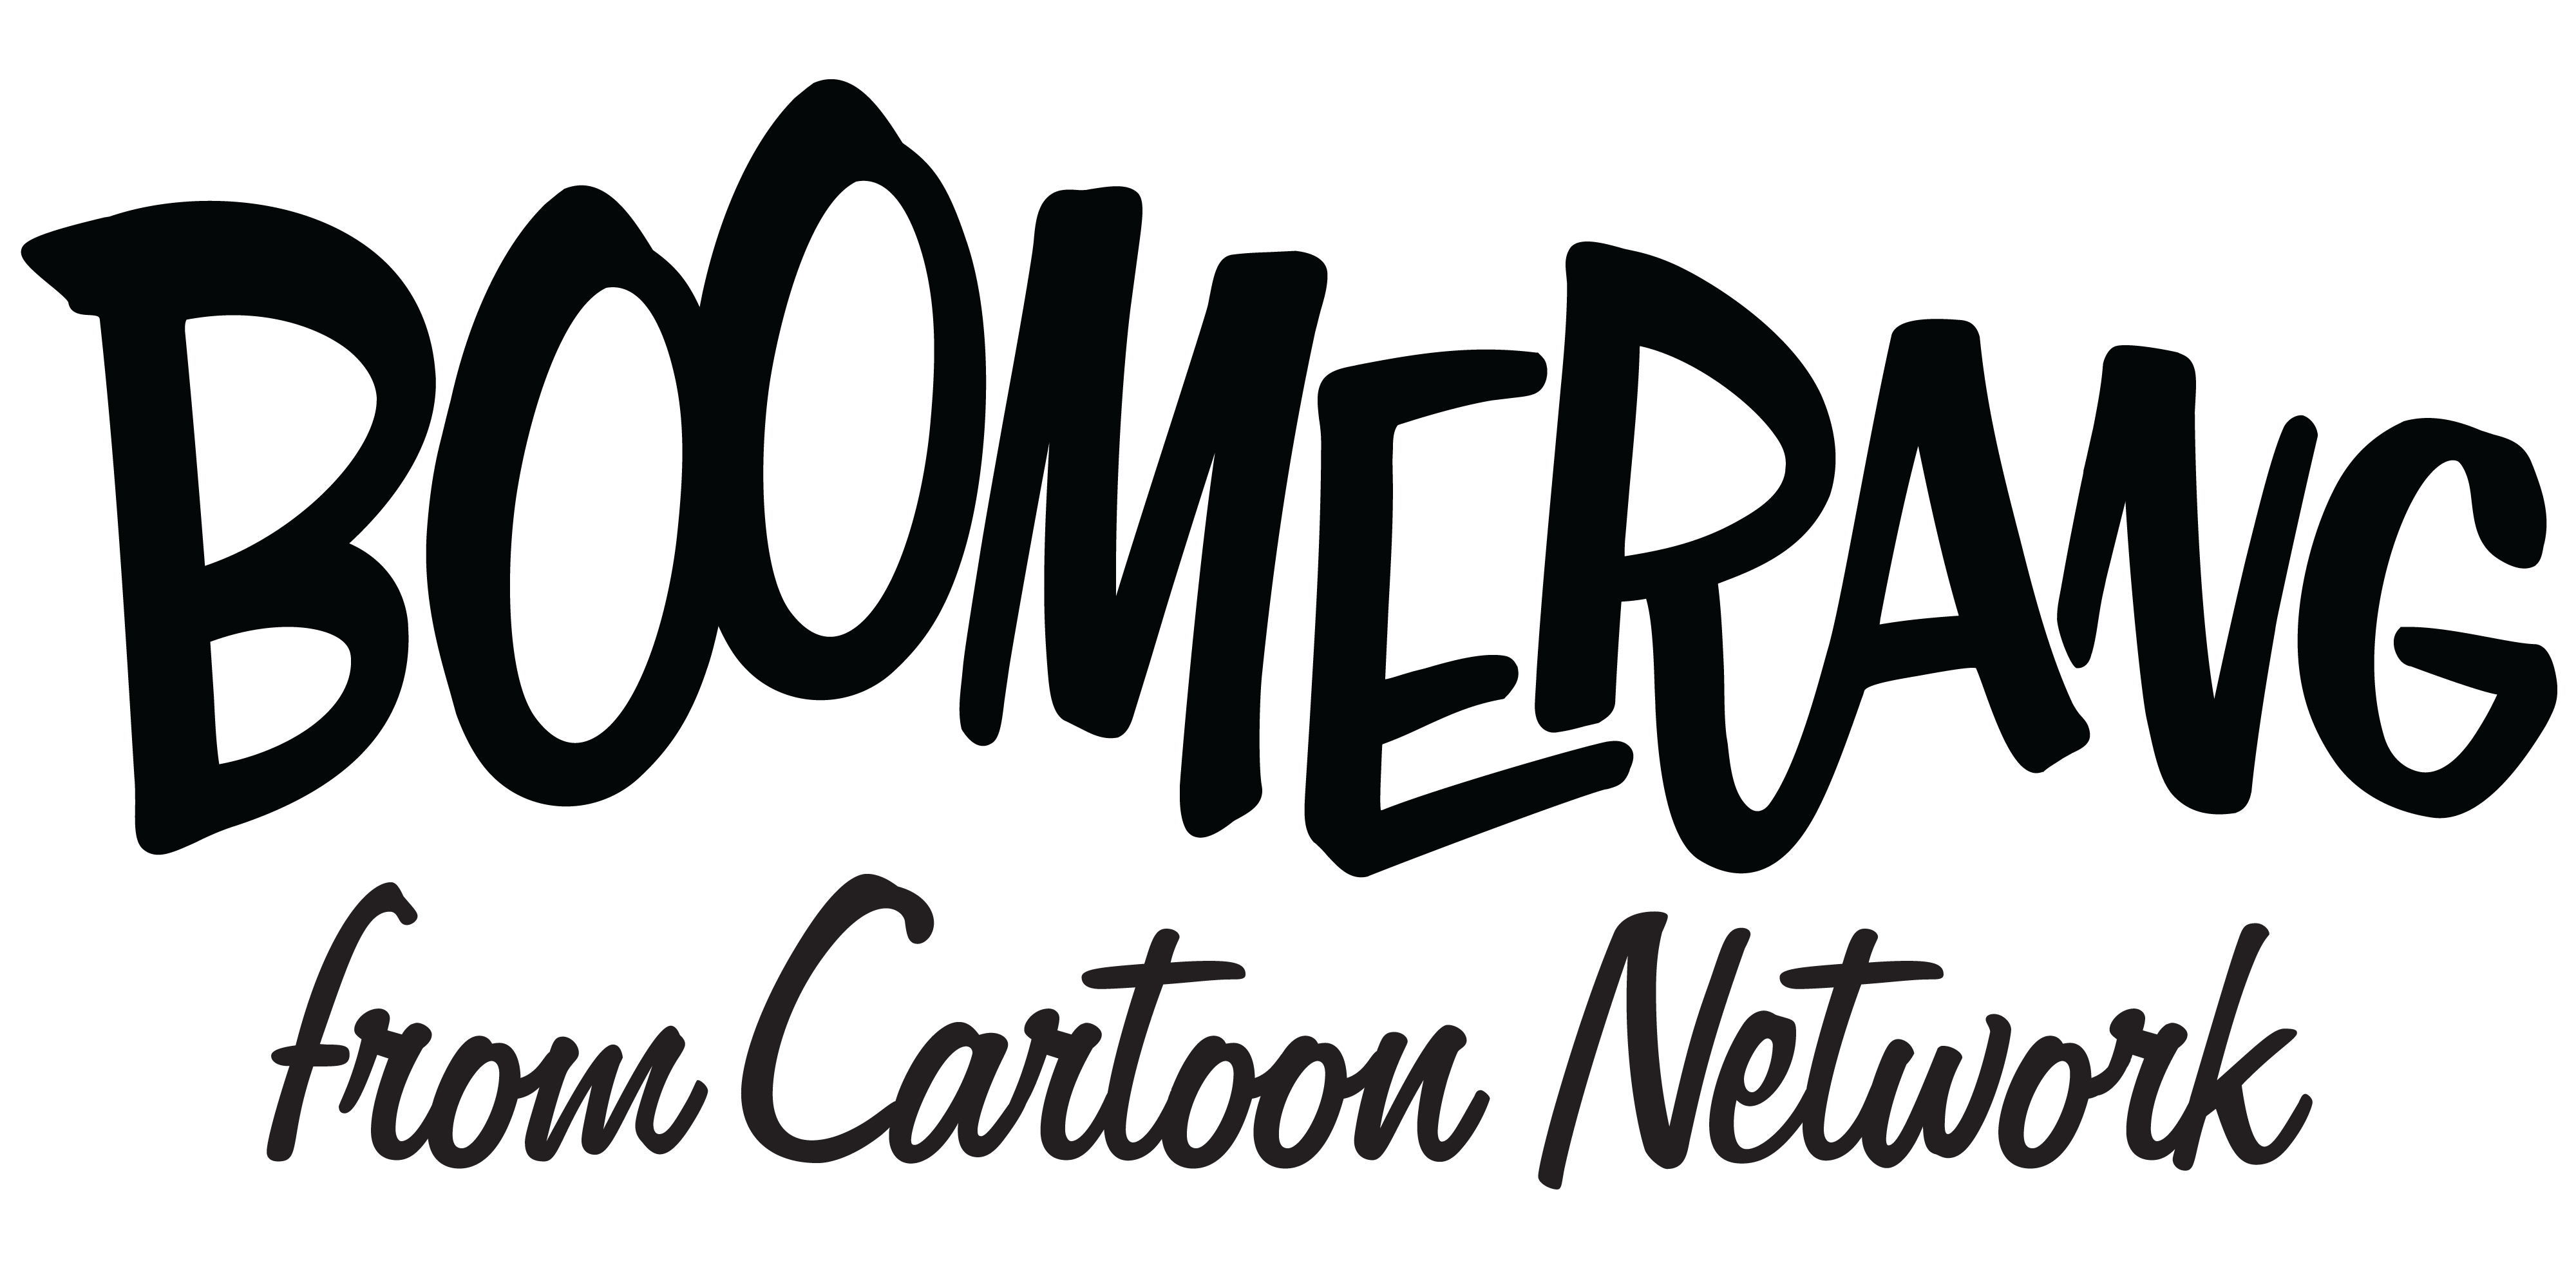 Boomerang From Cartoon Network Logo - BoomerangLogo.png